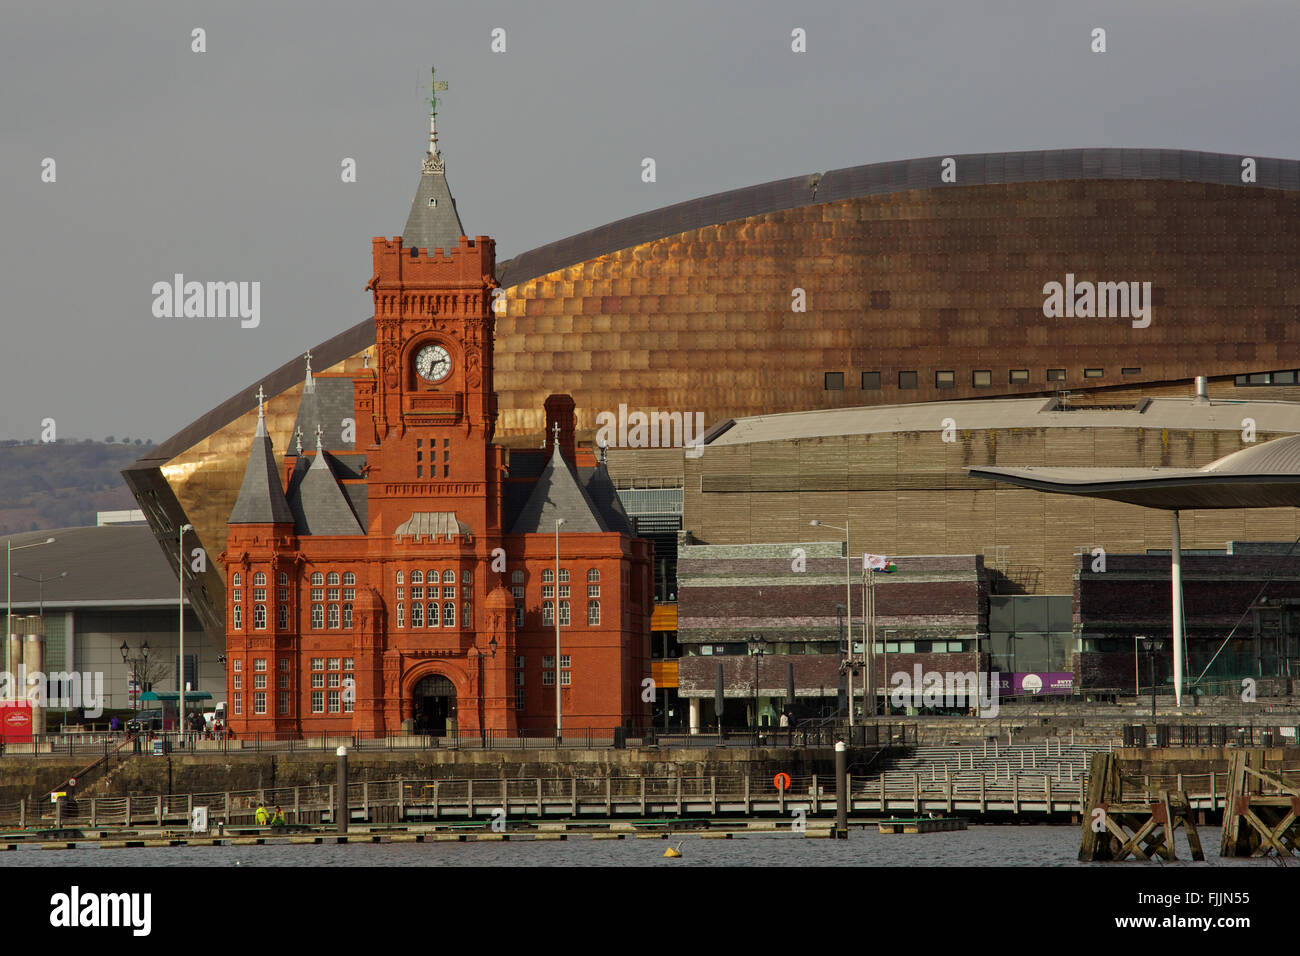 Pier Head Building et gallois Millenium Center, WMC, et des édifices du Parlement Gallois ou Senedd Cardiff Bay Wales UK Banque D'Images